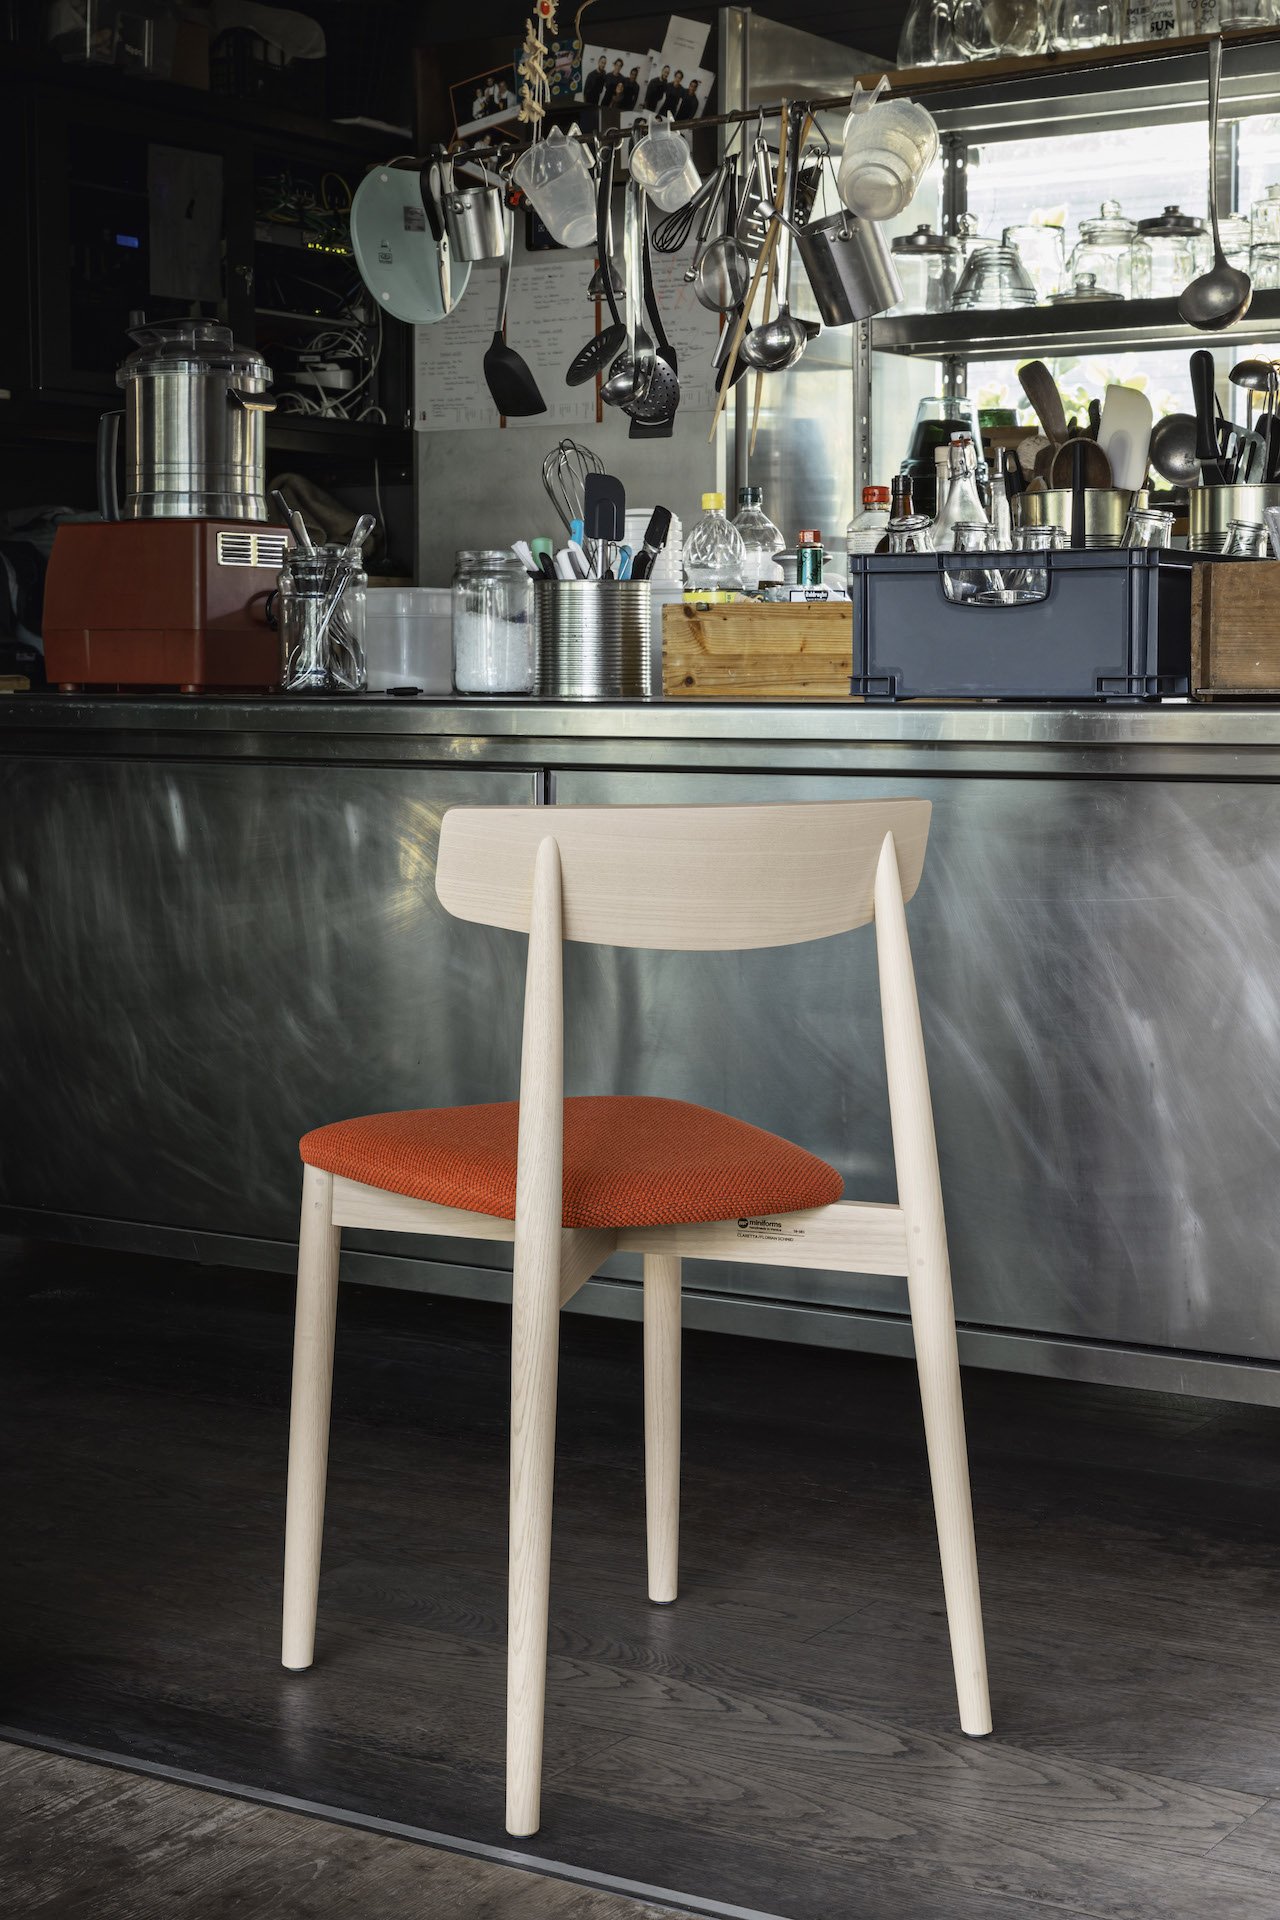 Claretta Wooden Chair from Miniforms, designed by Florian Schmid